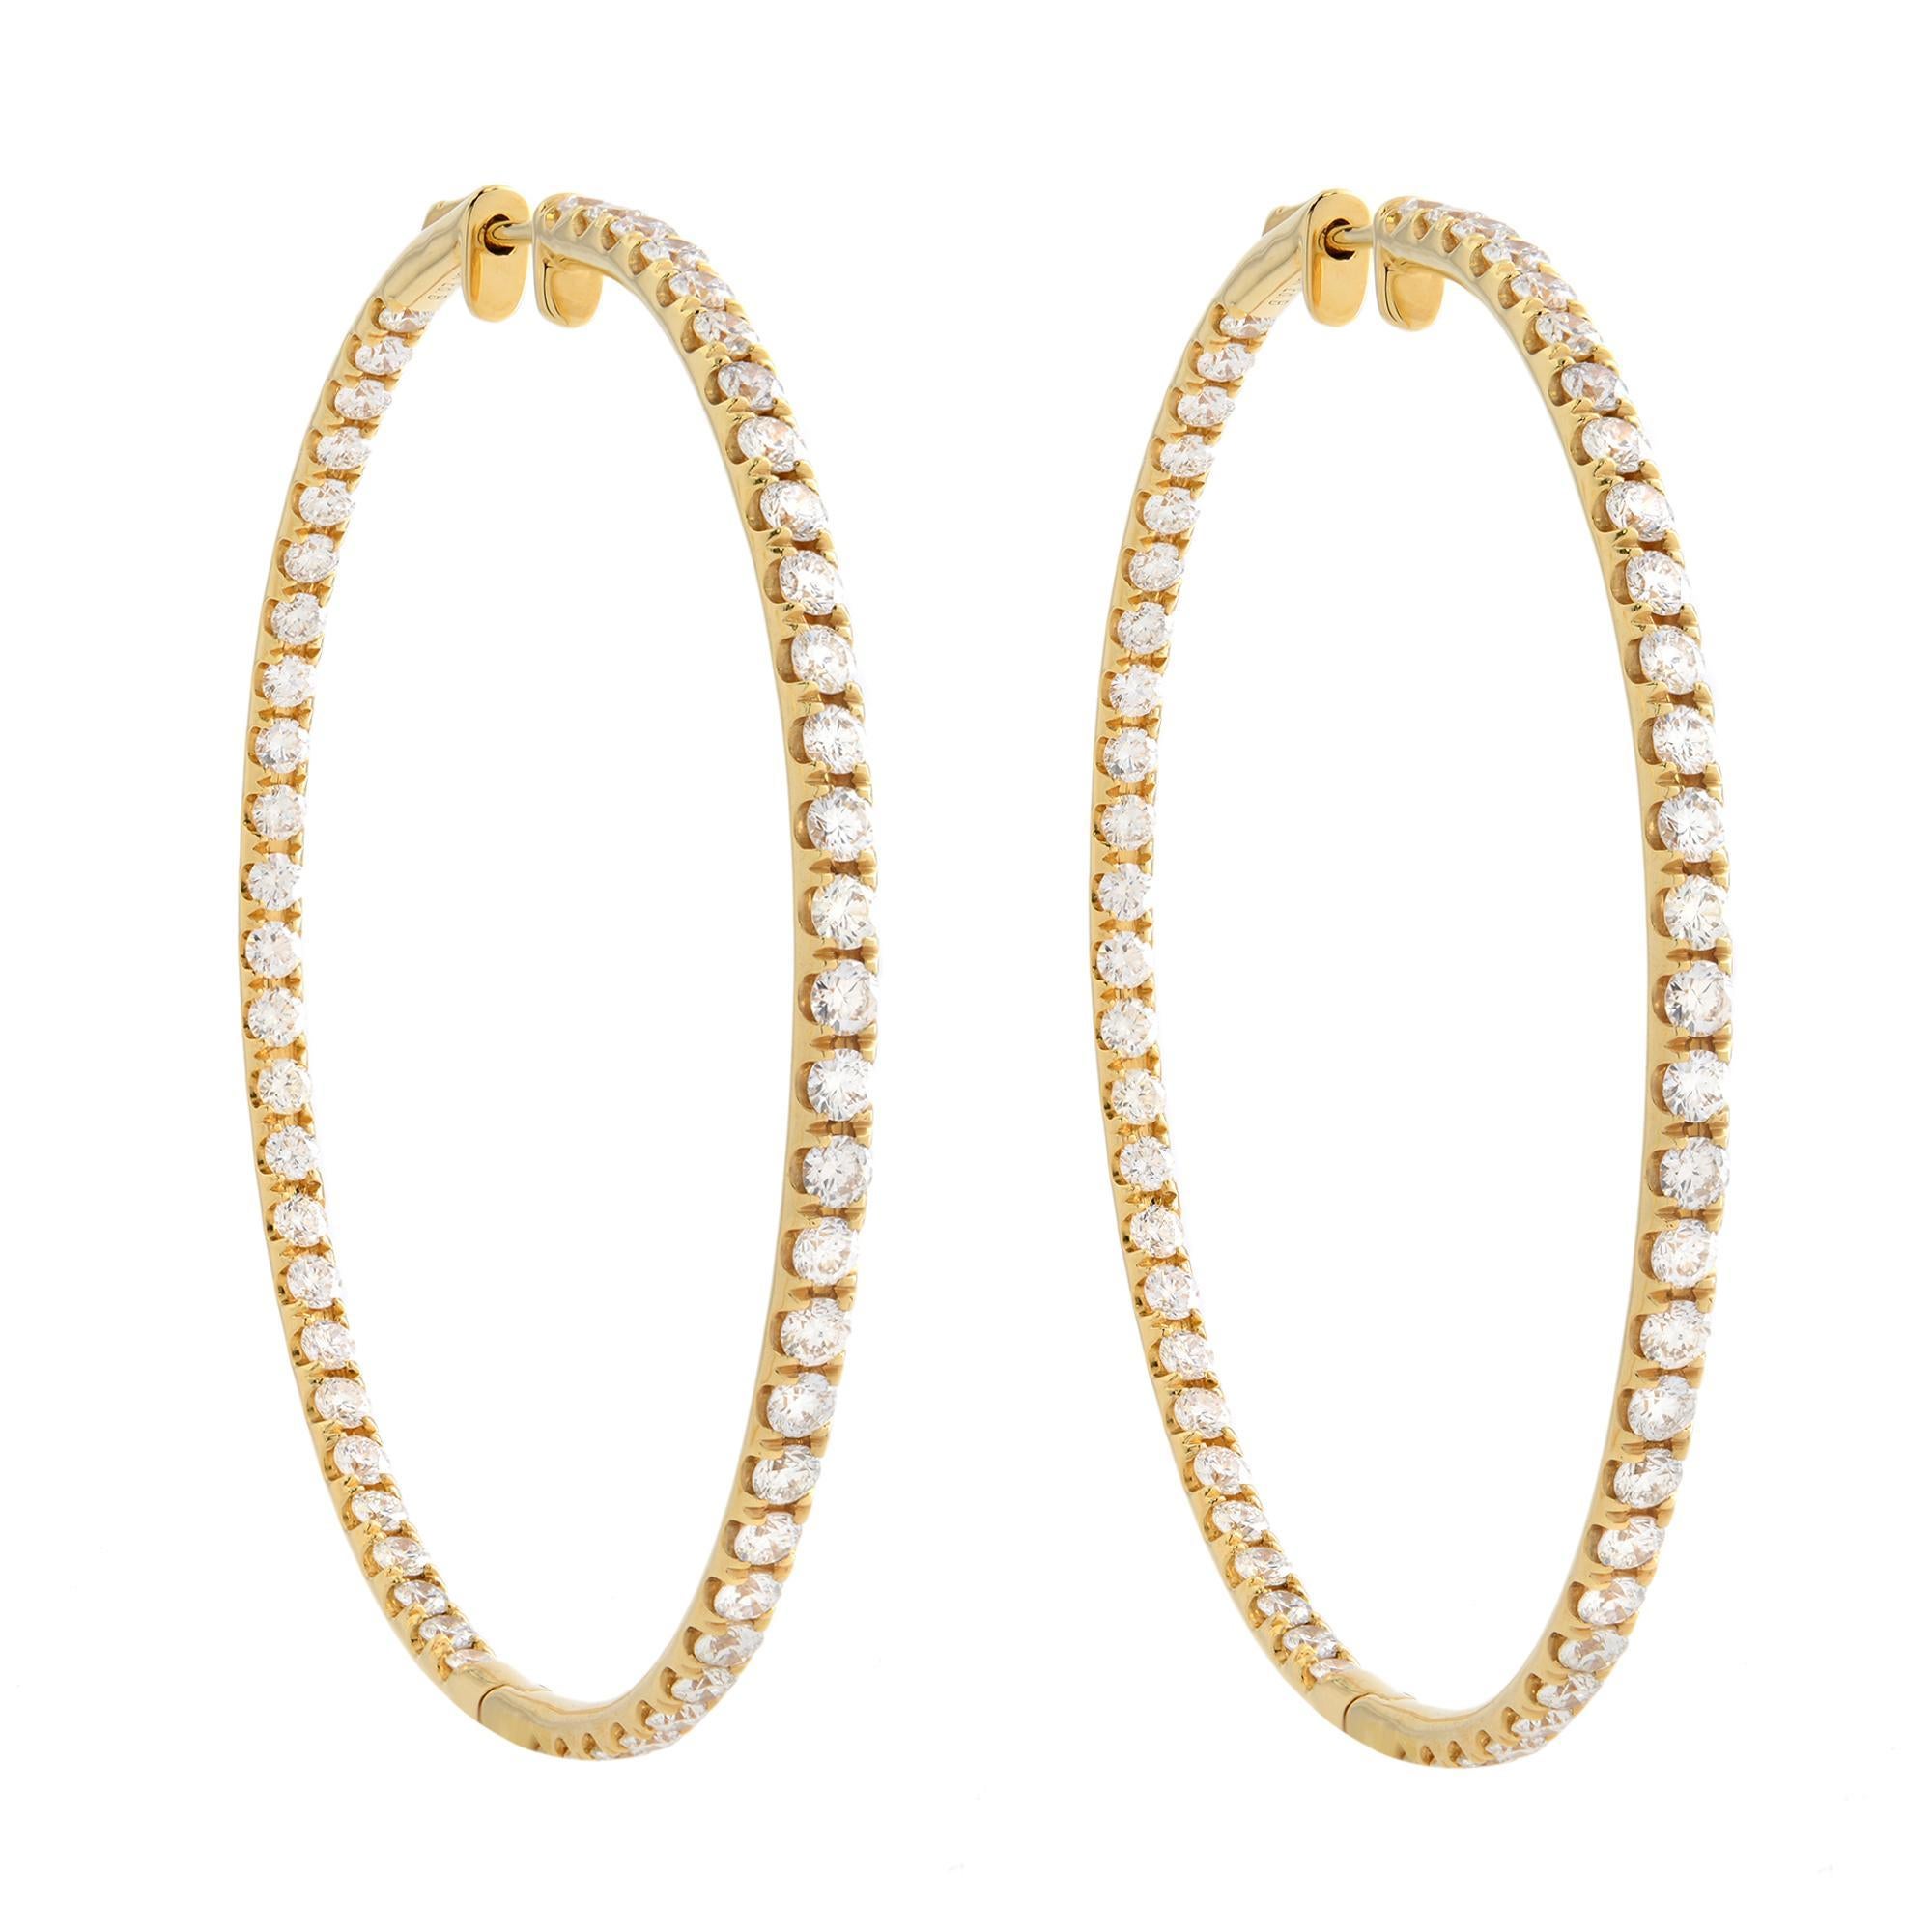 Rachel Koen Inside Out Diamond Hoop Earrings 14K Yellow Gold 1.75cttw For Sale